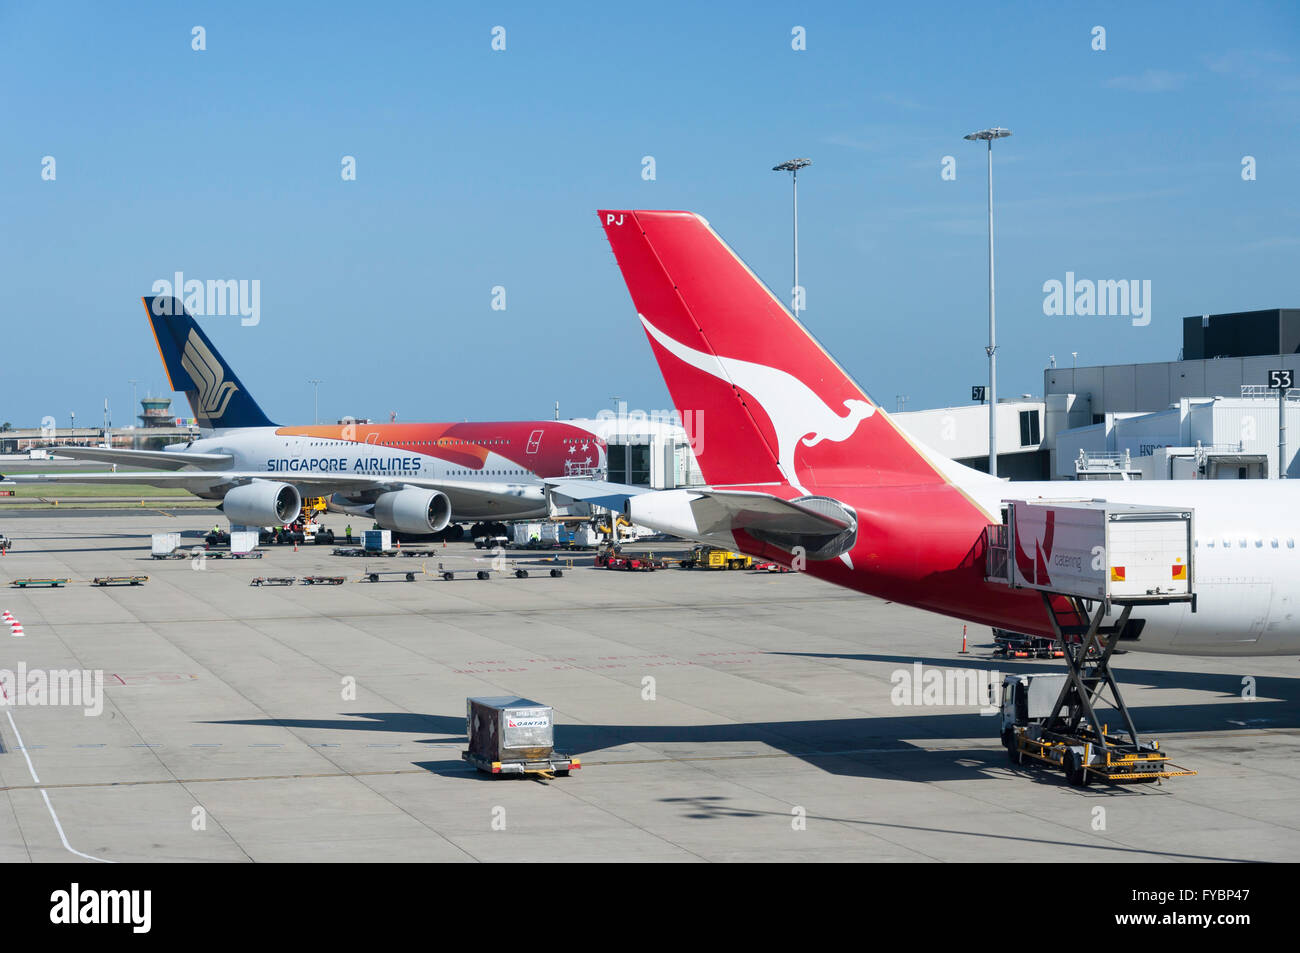 Qantas et Singapore Airlines à l'aéroport de Sydney Kingsford Smith, Mascot, Sydney, New South Wales, Australia Banque D'Images